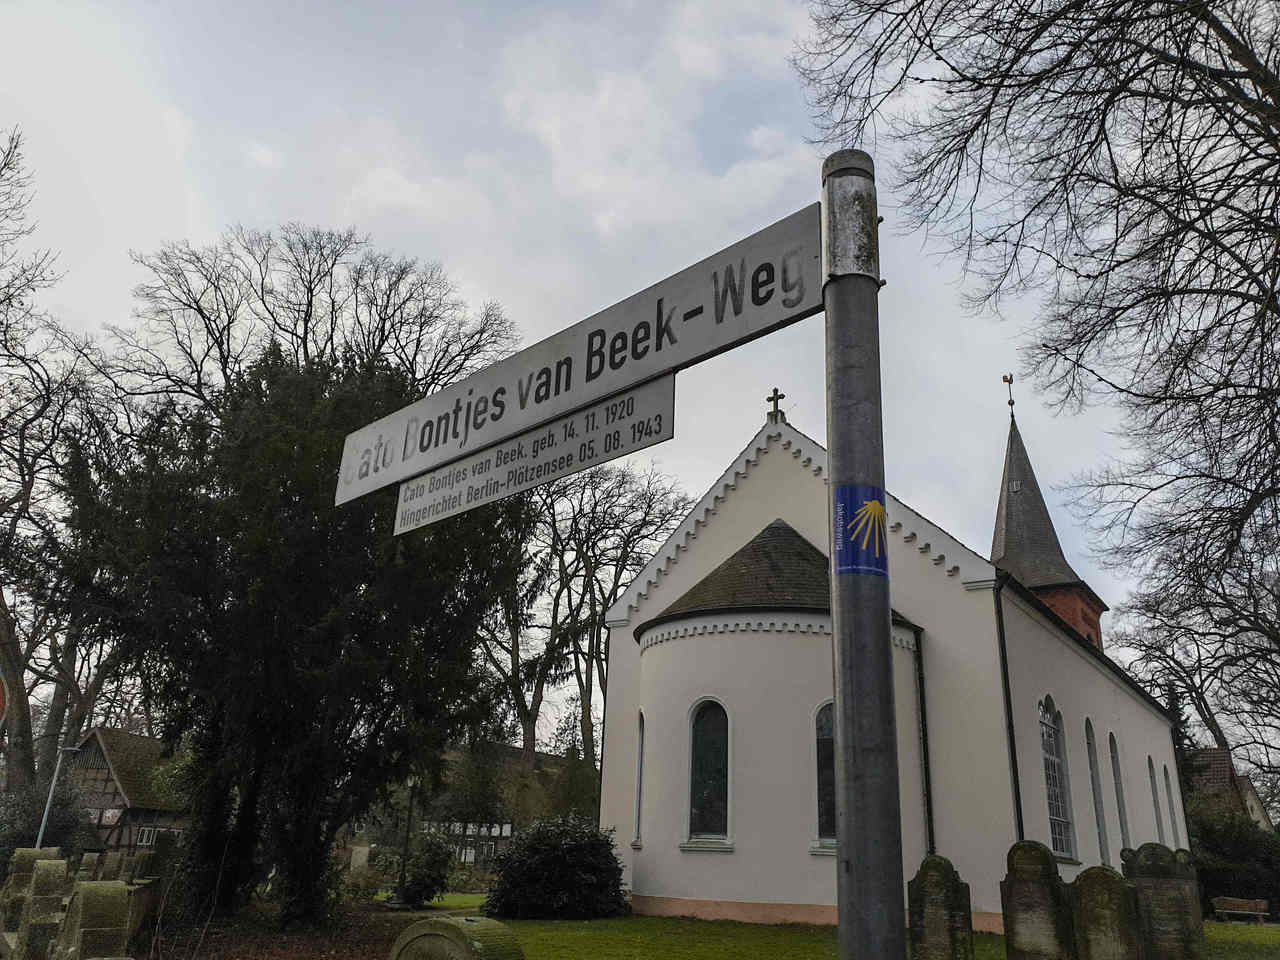 Am 14. November 2020 wäre Cato Bontjes van Beek 100 Jahre alt geworden. Die Feierlichkeiten dazu sollen möglichst in diesem Jahr nachgeholt werden.  Foto: Tobias Woelki 